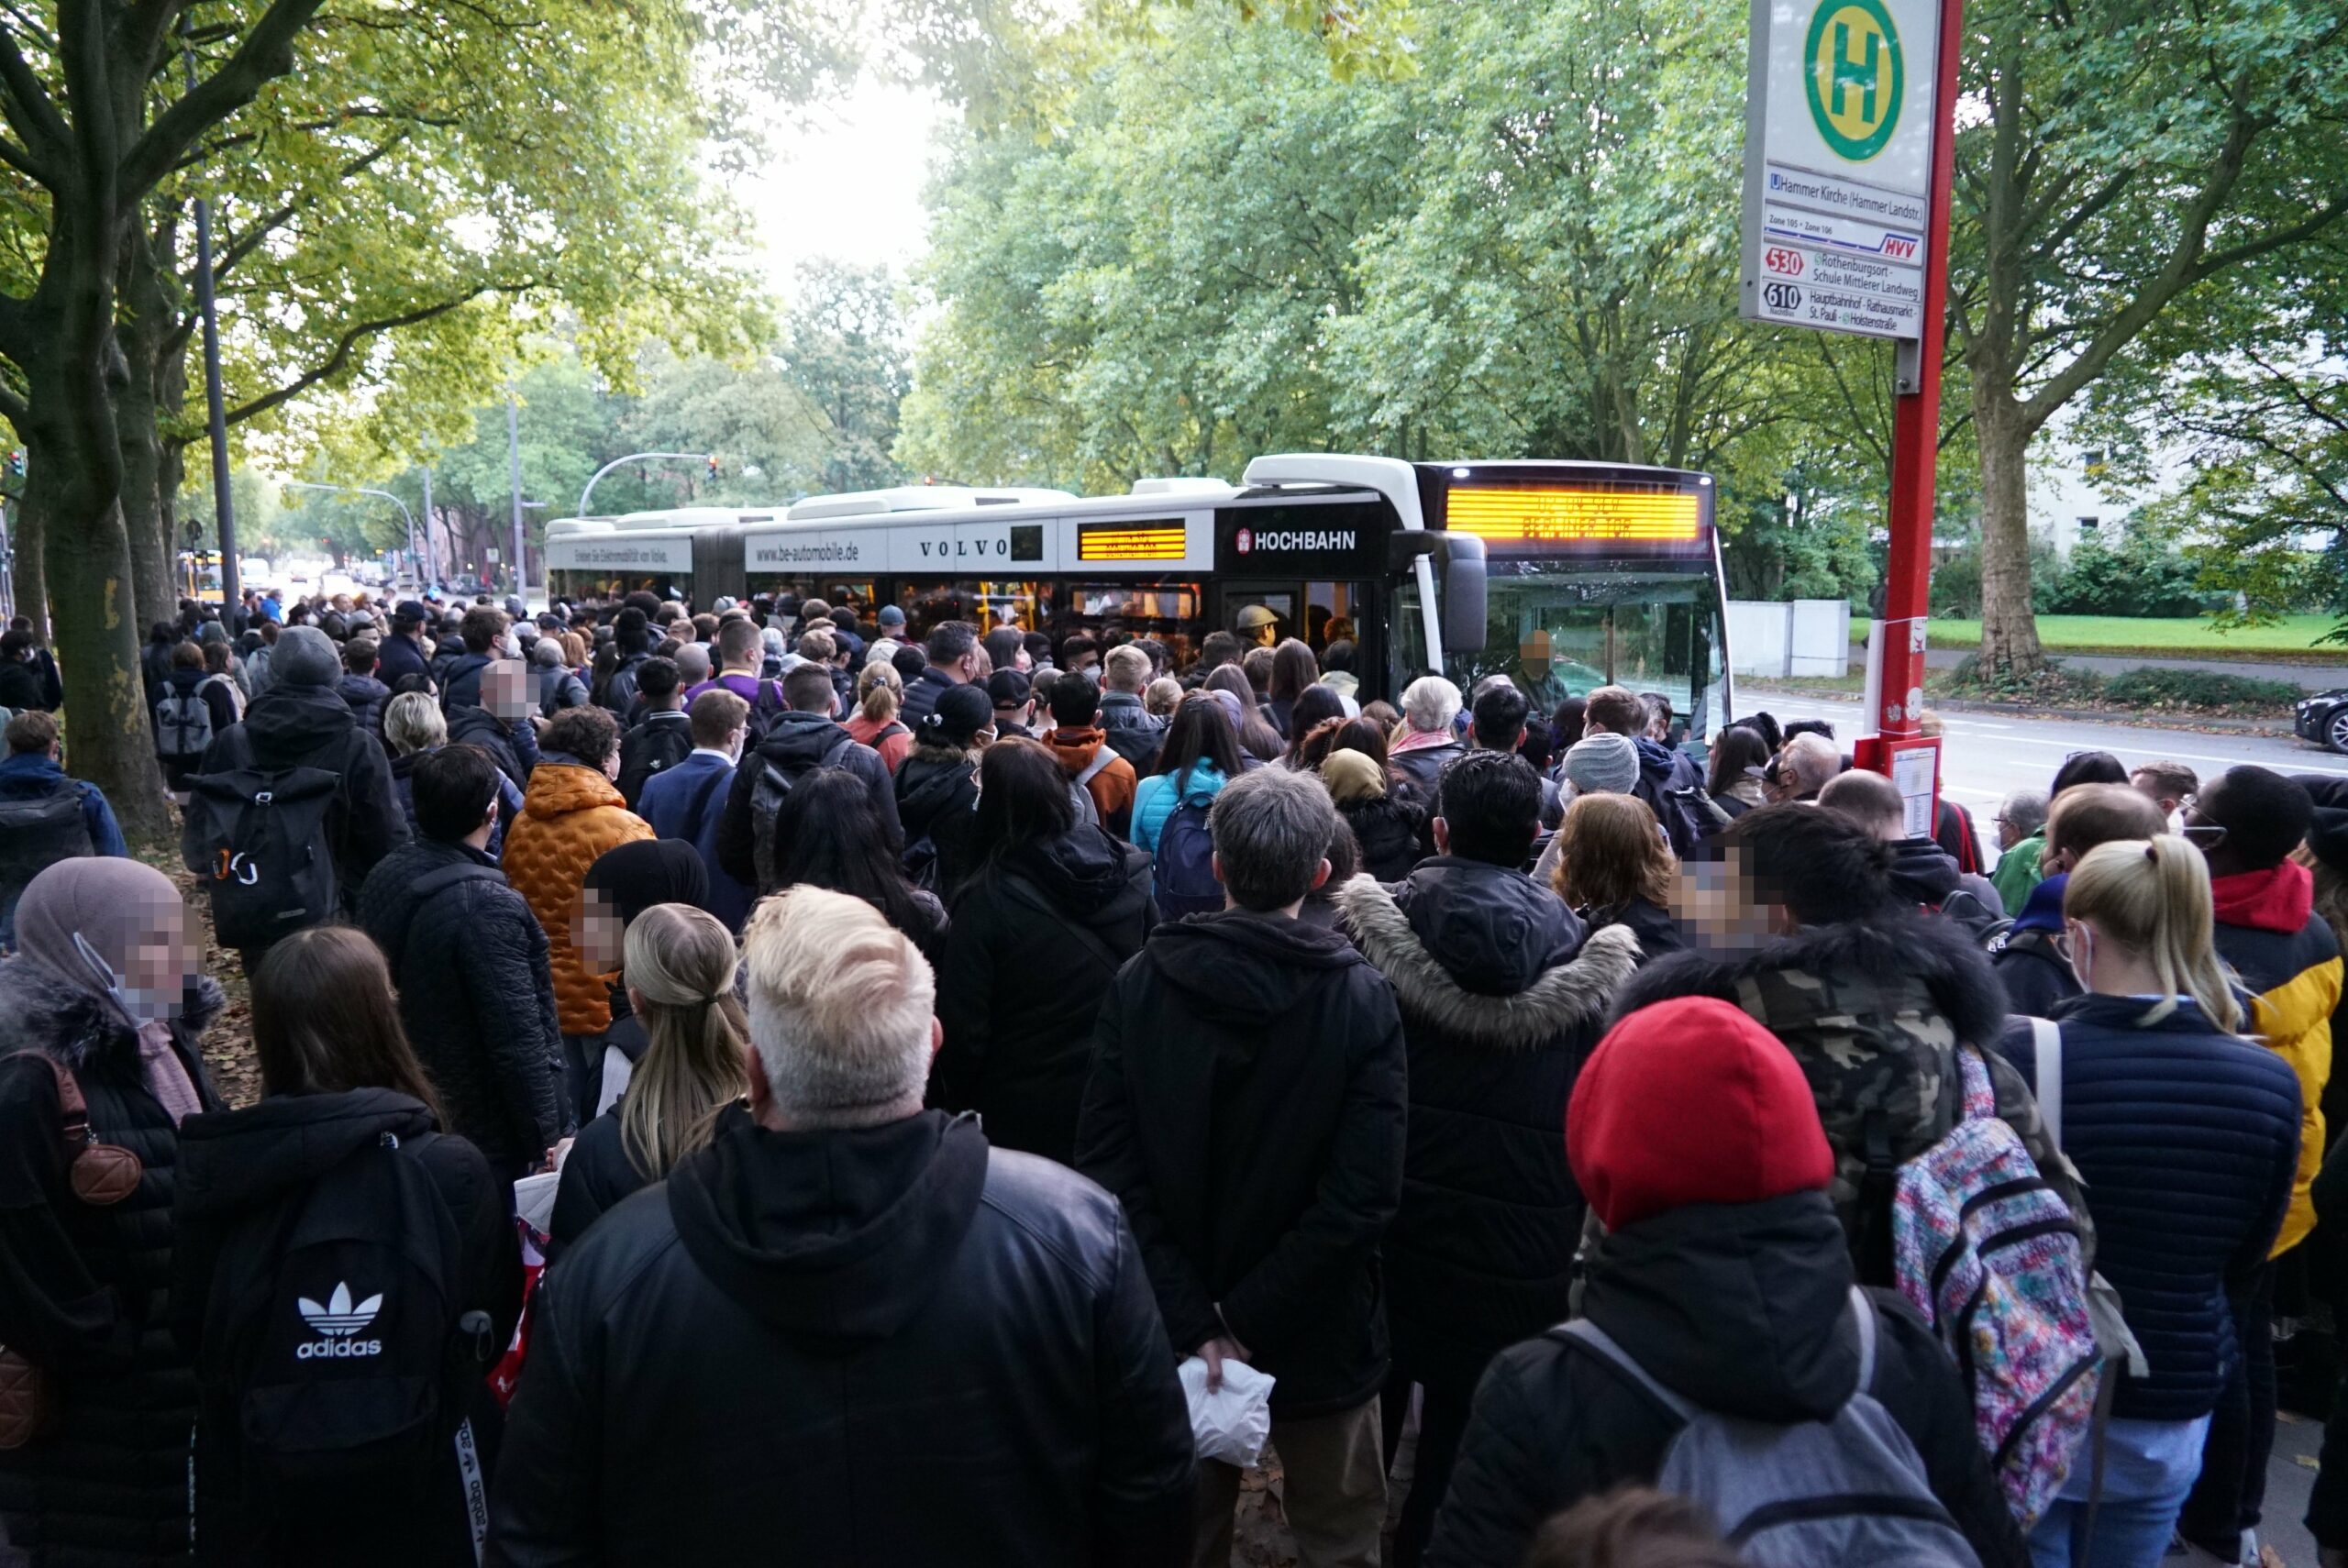 Zahlreiche Menschen drängen sich um einen Bus